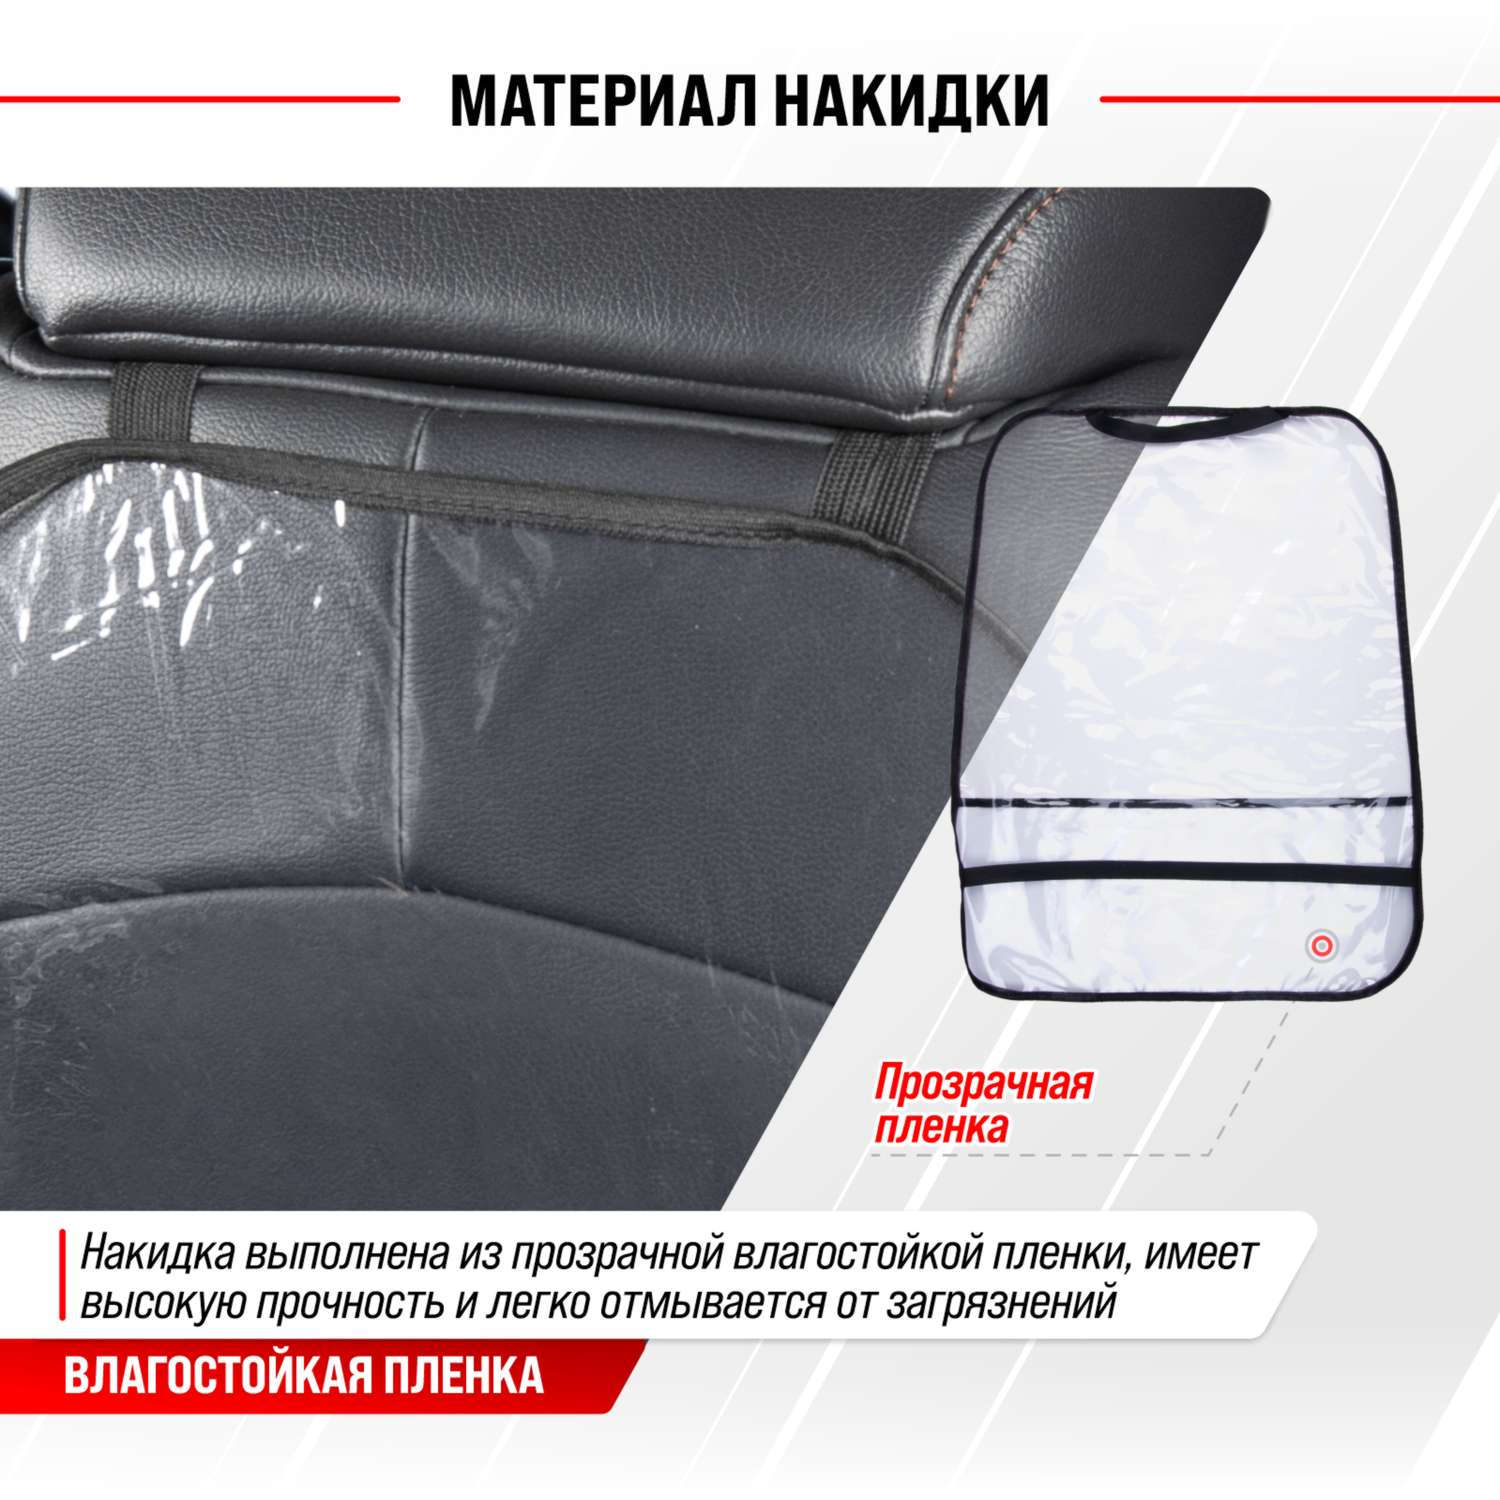 Защита спинки сиденья SKYWAY органайзер с карманом 60*50см прозрачная пленка 200 мкм - фото 5